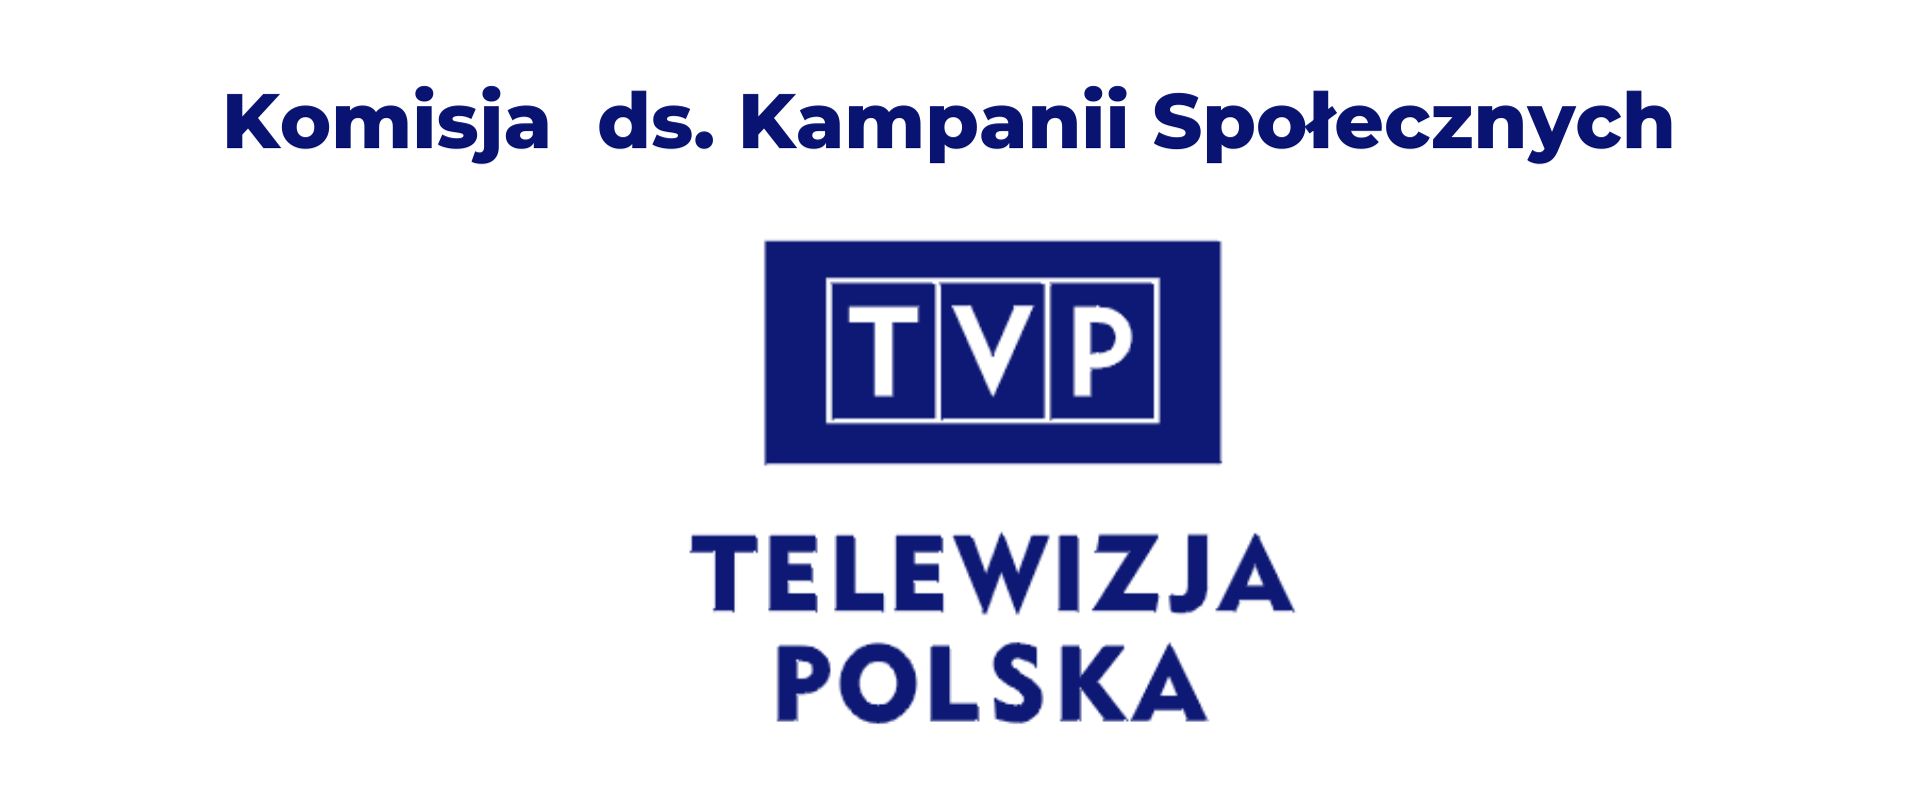 Nabór do Komisji ds. Kampanii Społecznych w TVP S.A. - logo TVP S.A. 